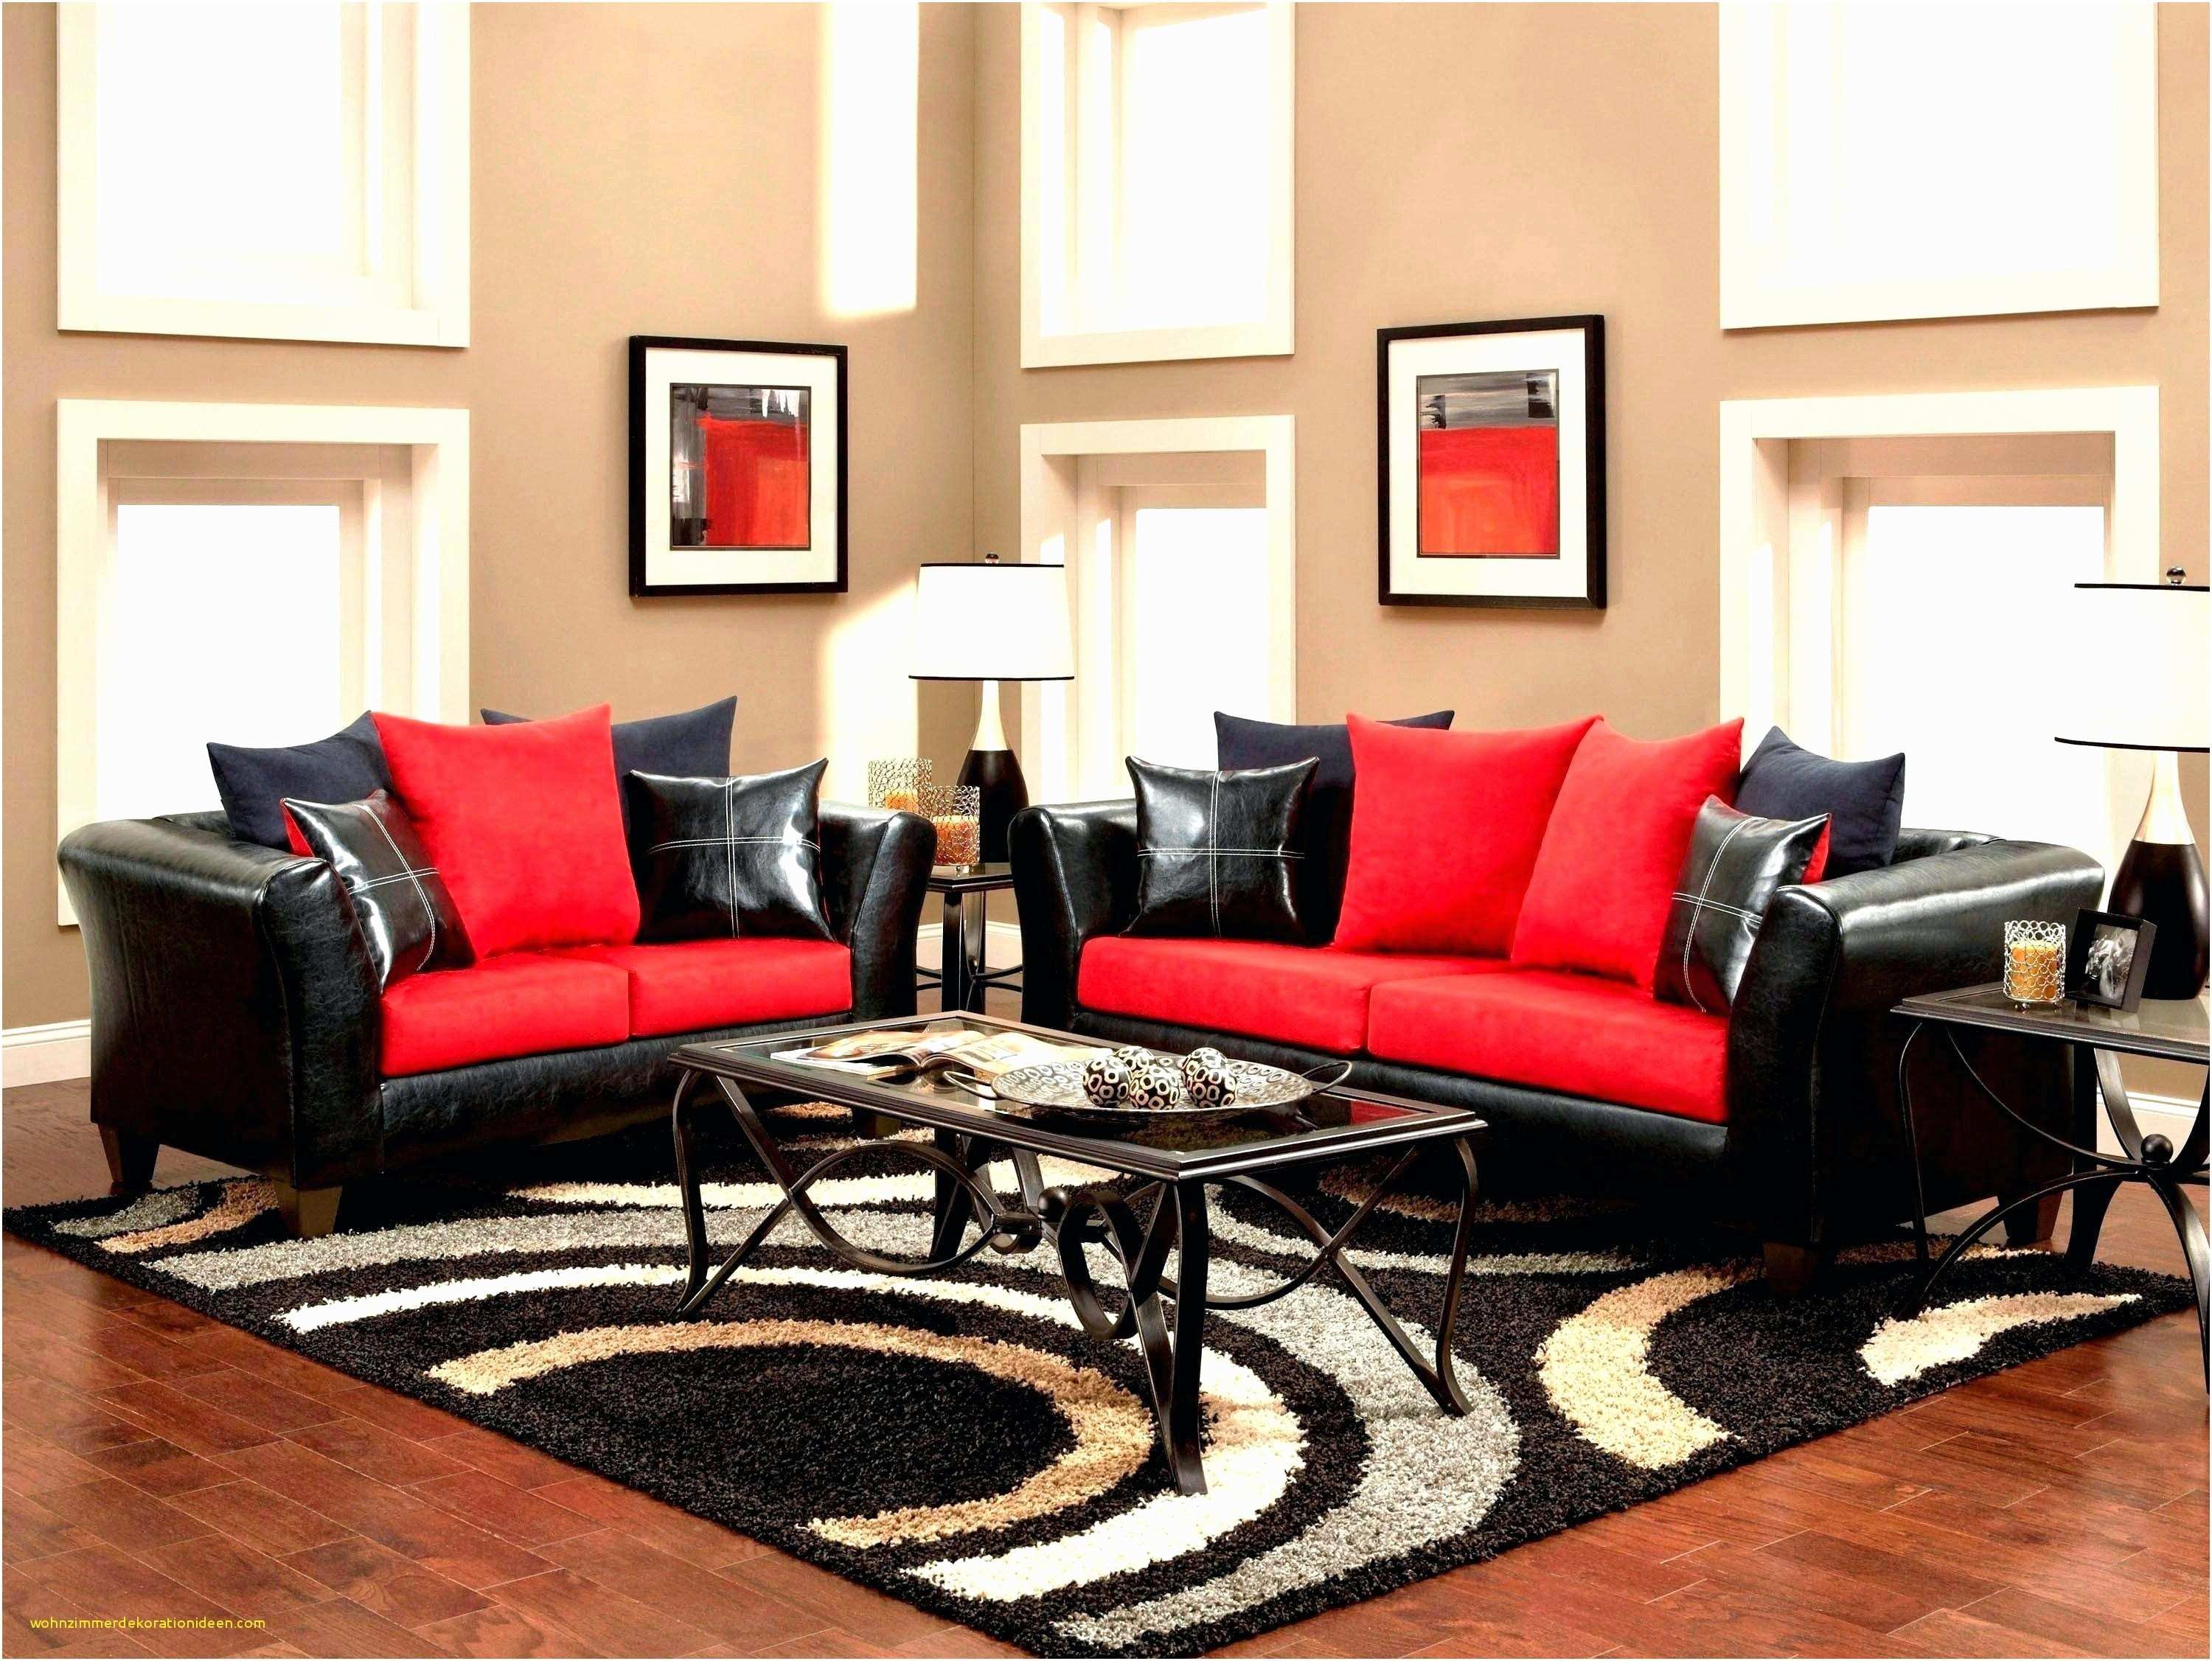 Темный диван в гостиной. Красный диван в интерьере гостиной. Красная мебель в интерьере гостиной. Красный ковер в интерьере гостиной. Темный диван в интерьере.